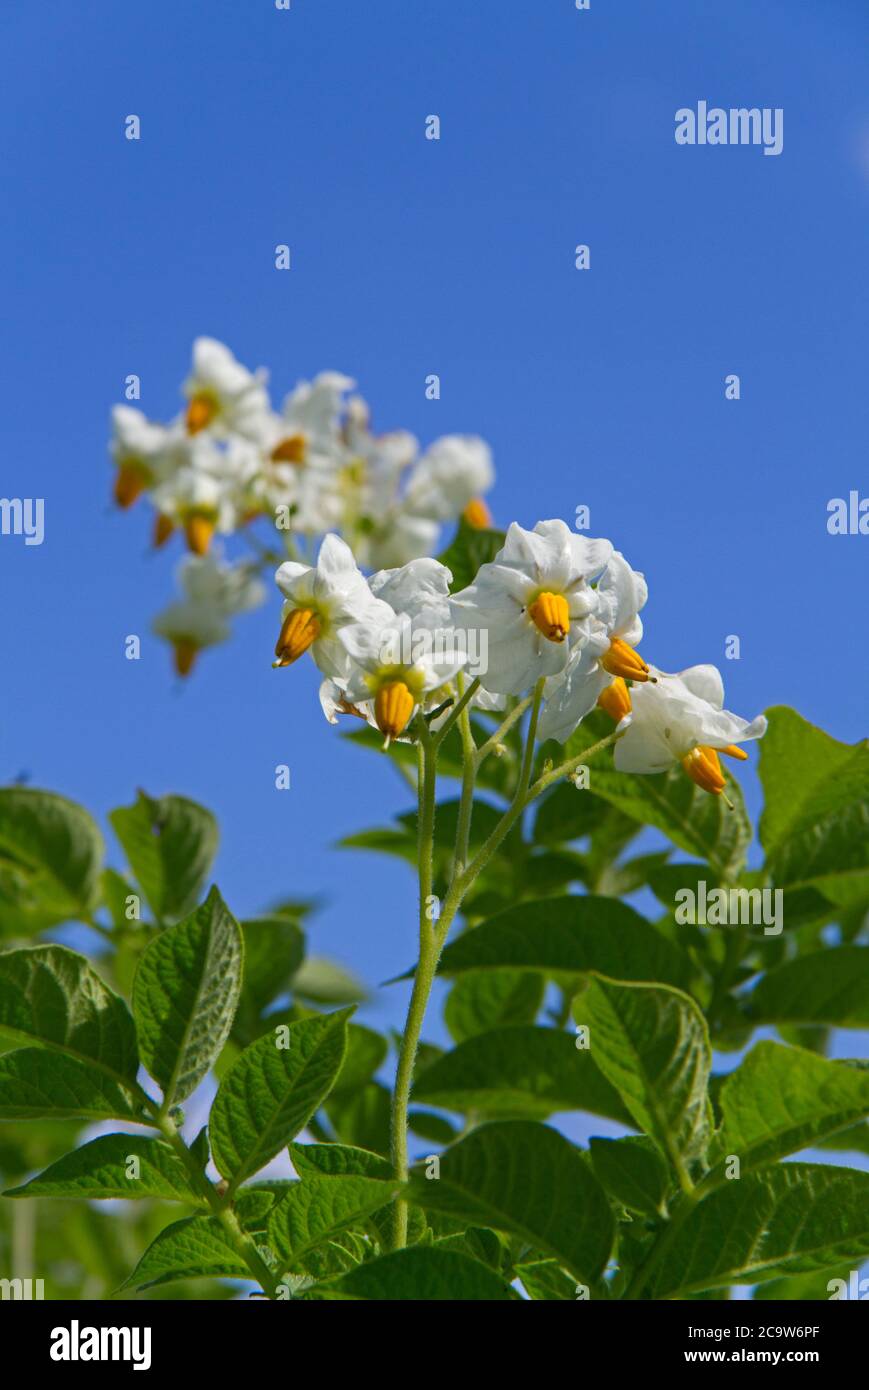 Fiori di una pianta di patata con petali bianchi e stami gialli contro un cielo blu Foto Stock